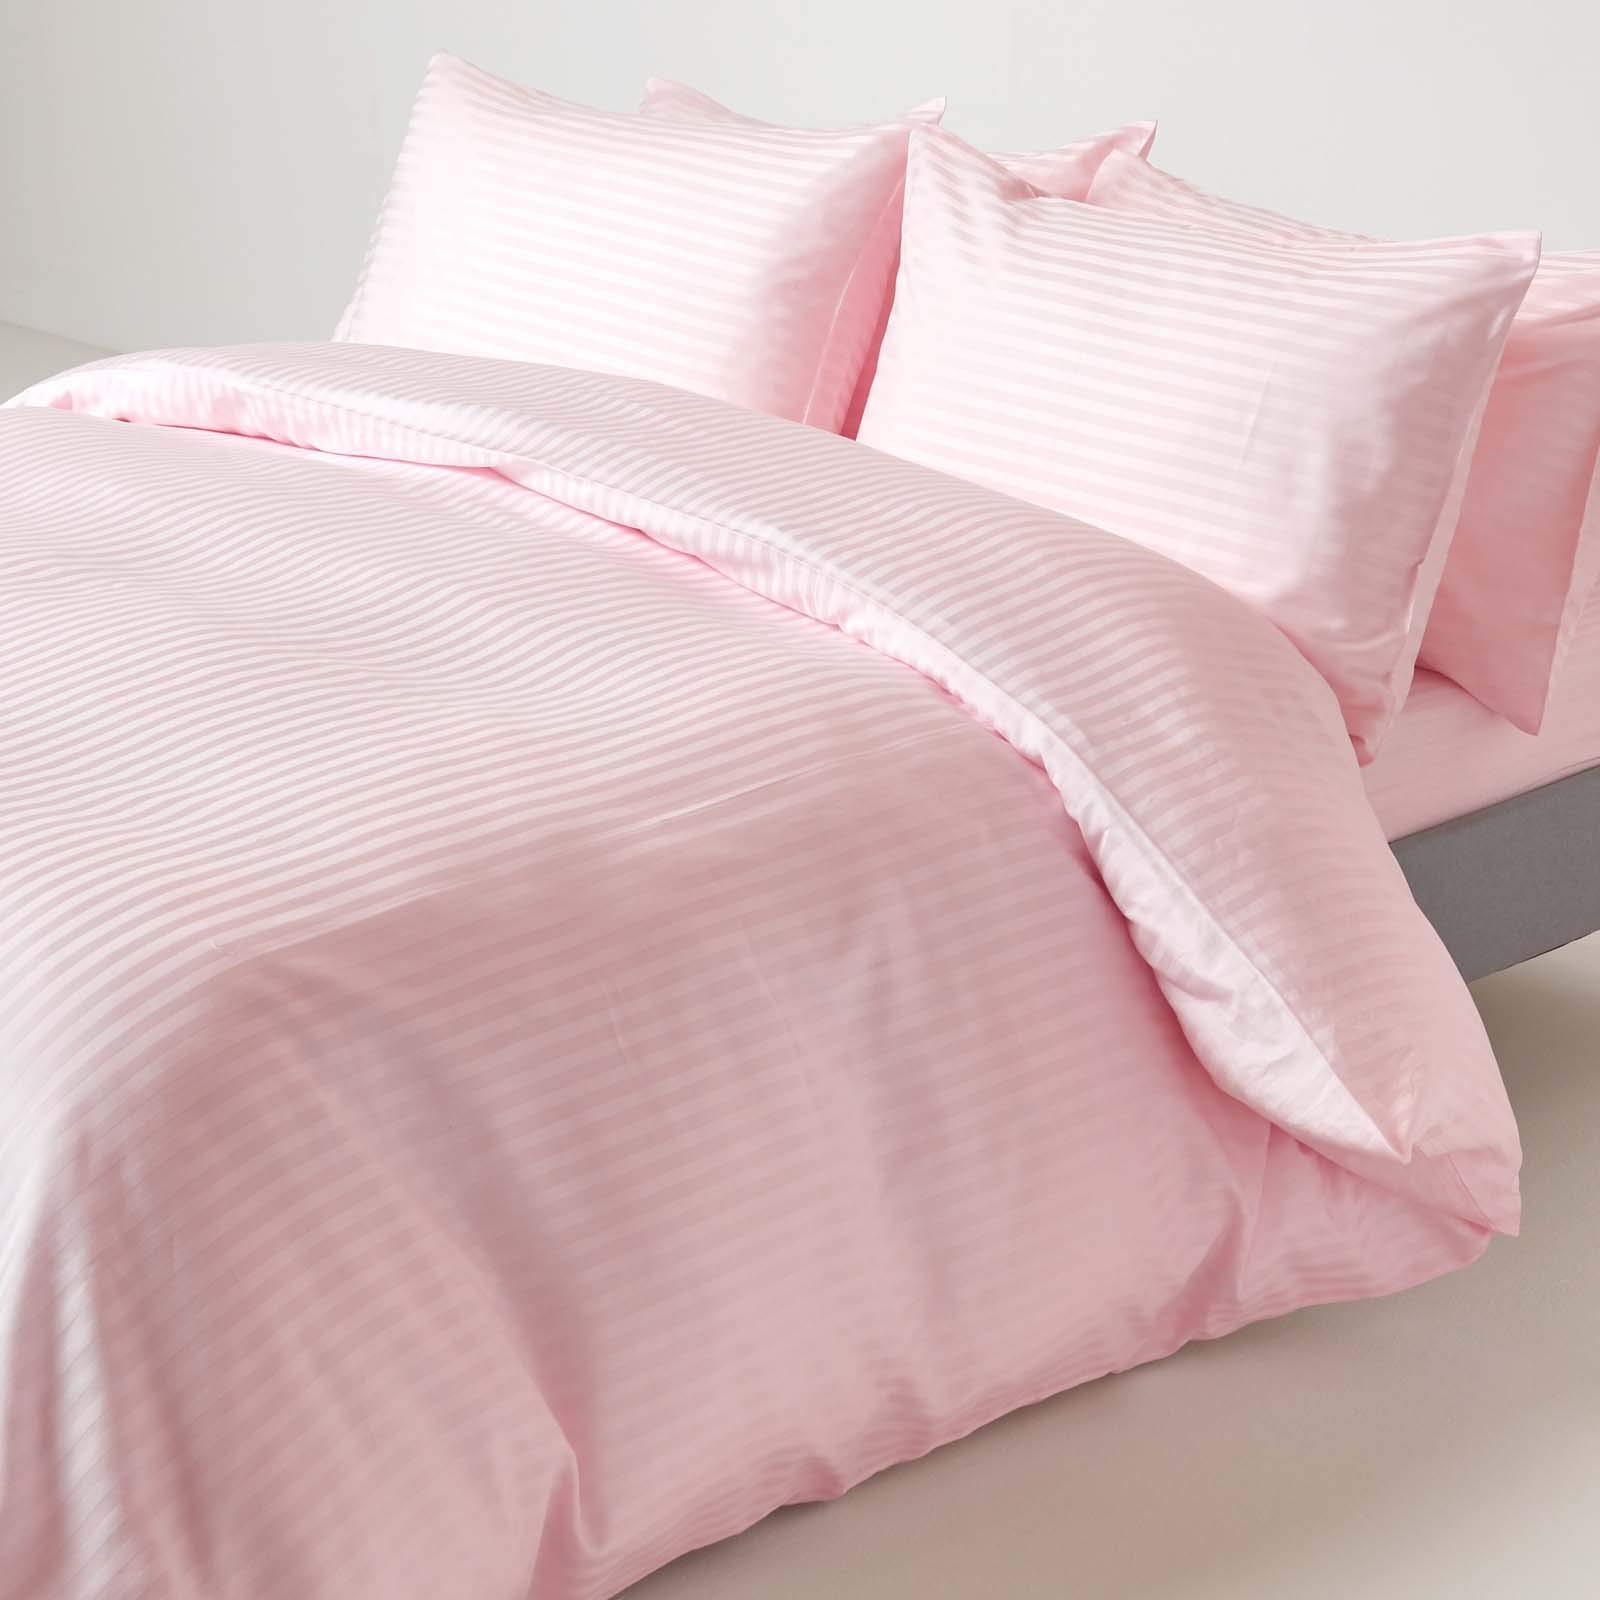 Homescapes 2-teiliges Damast-Bettwäsche-Set rosa aus 100% ägyptischer Baumwolle mit Satin-Streifen, 1 Bettbezug 135x200 cm & 1 Kissenbezug 48x74 cm